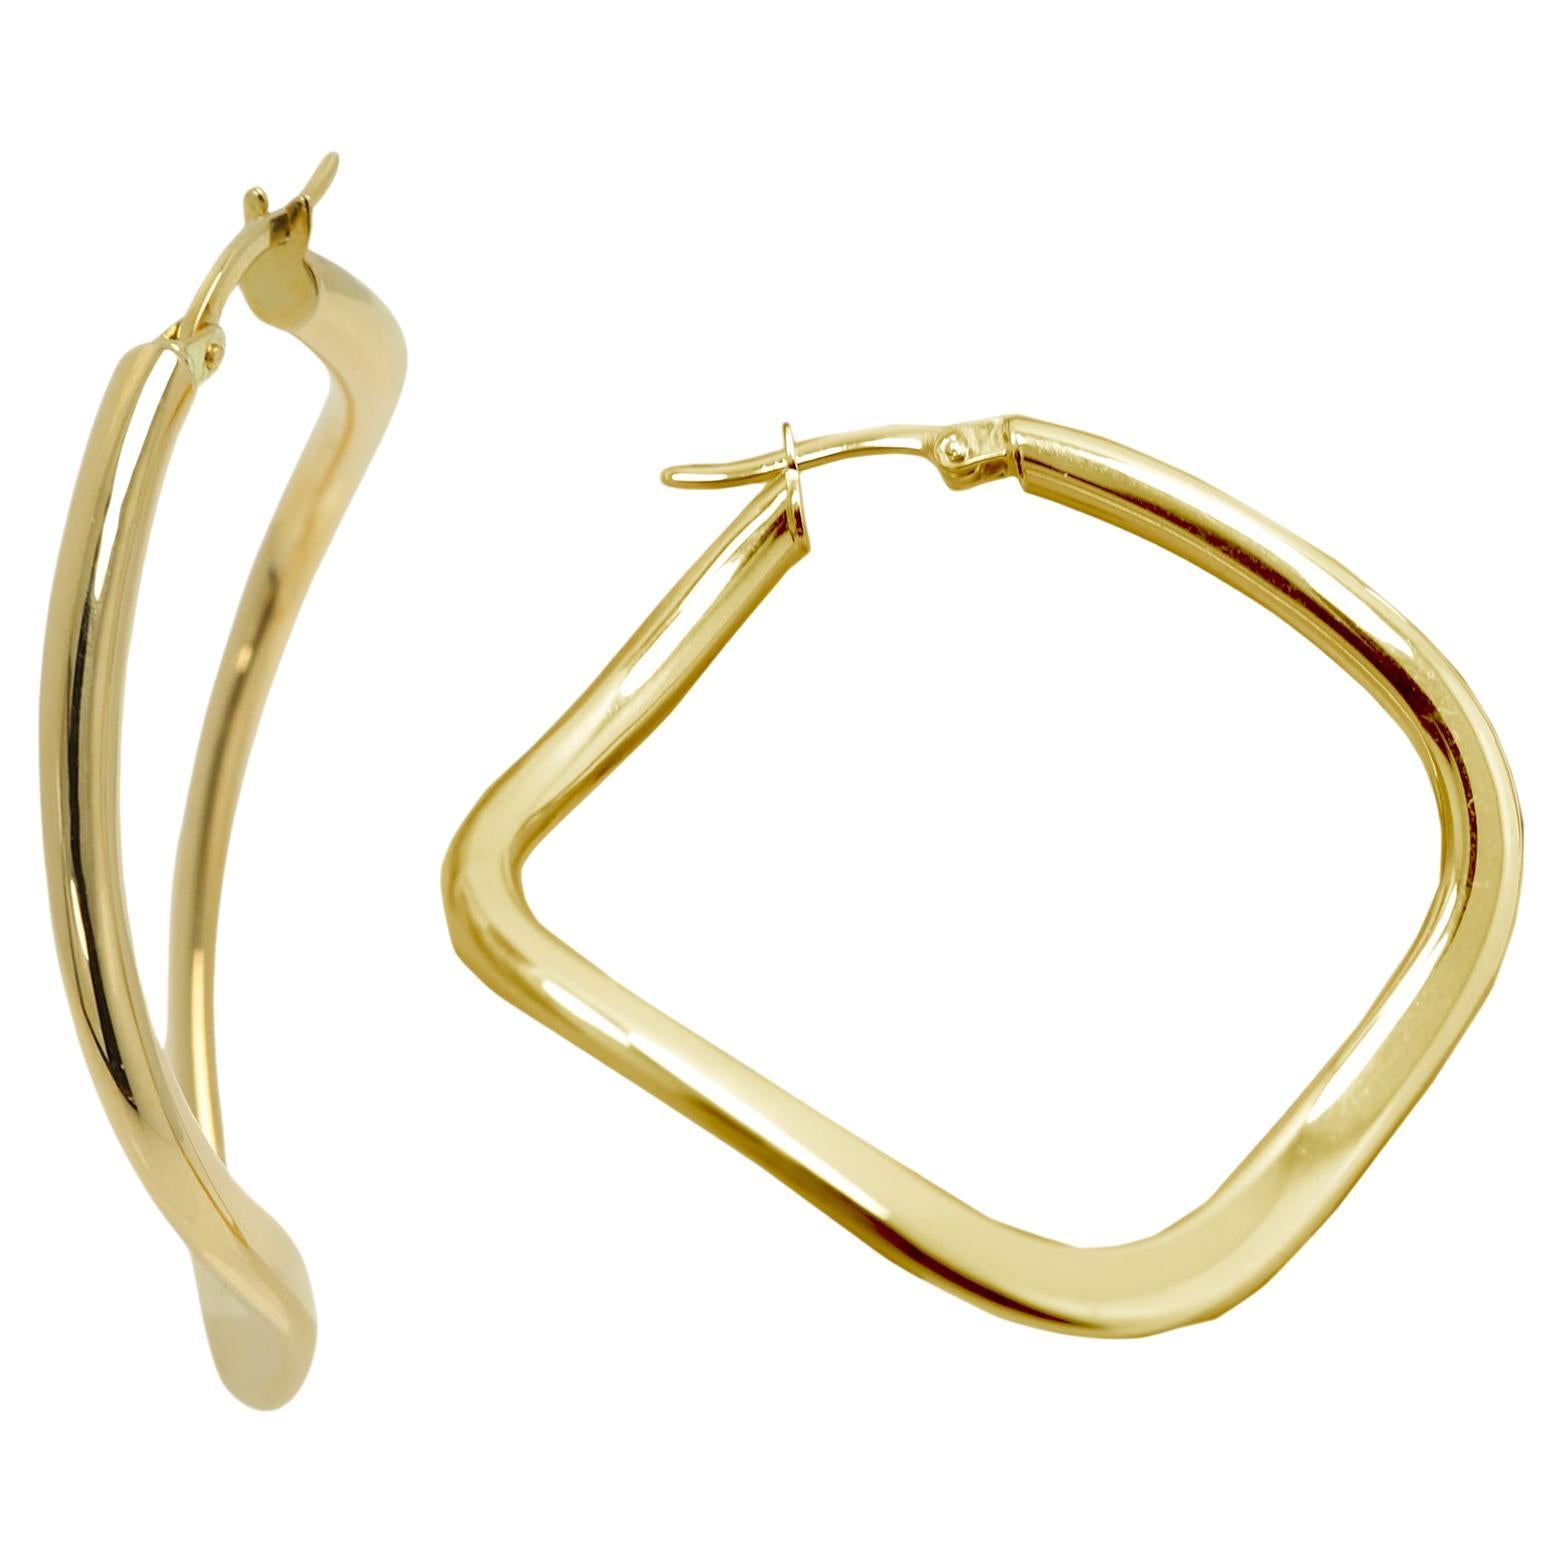 Swirl Curvy Italian Hoops 14 Karat Gold Earrings Gold Hoops Artistic Earrings For Sale